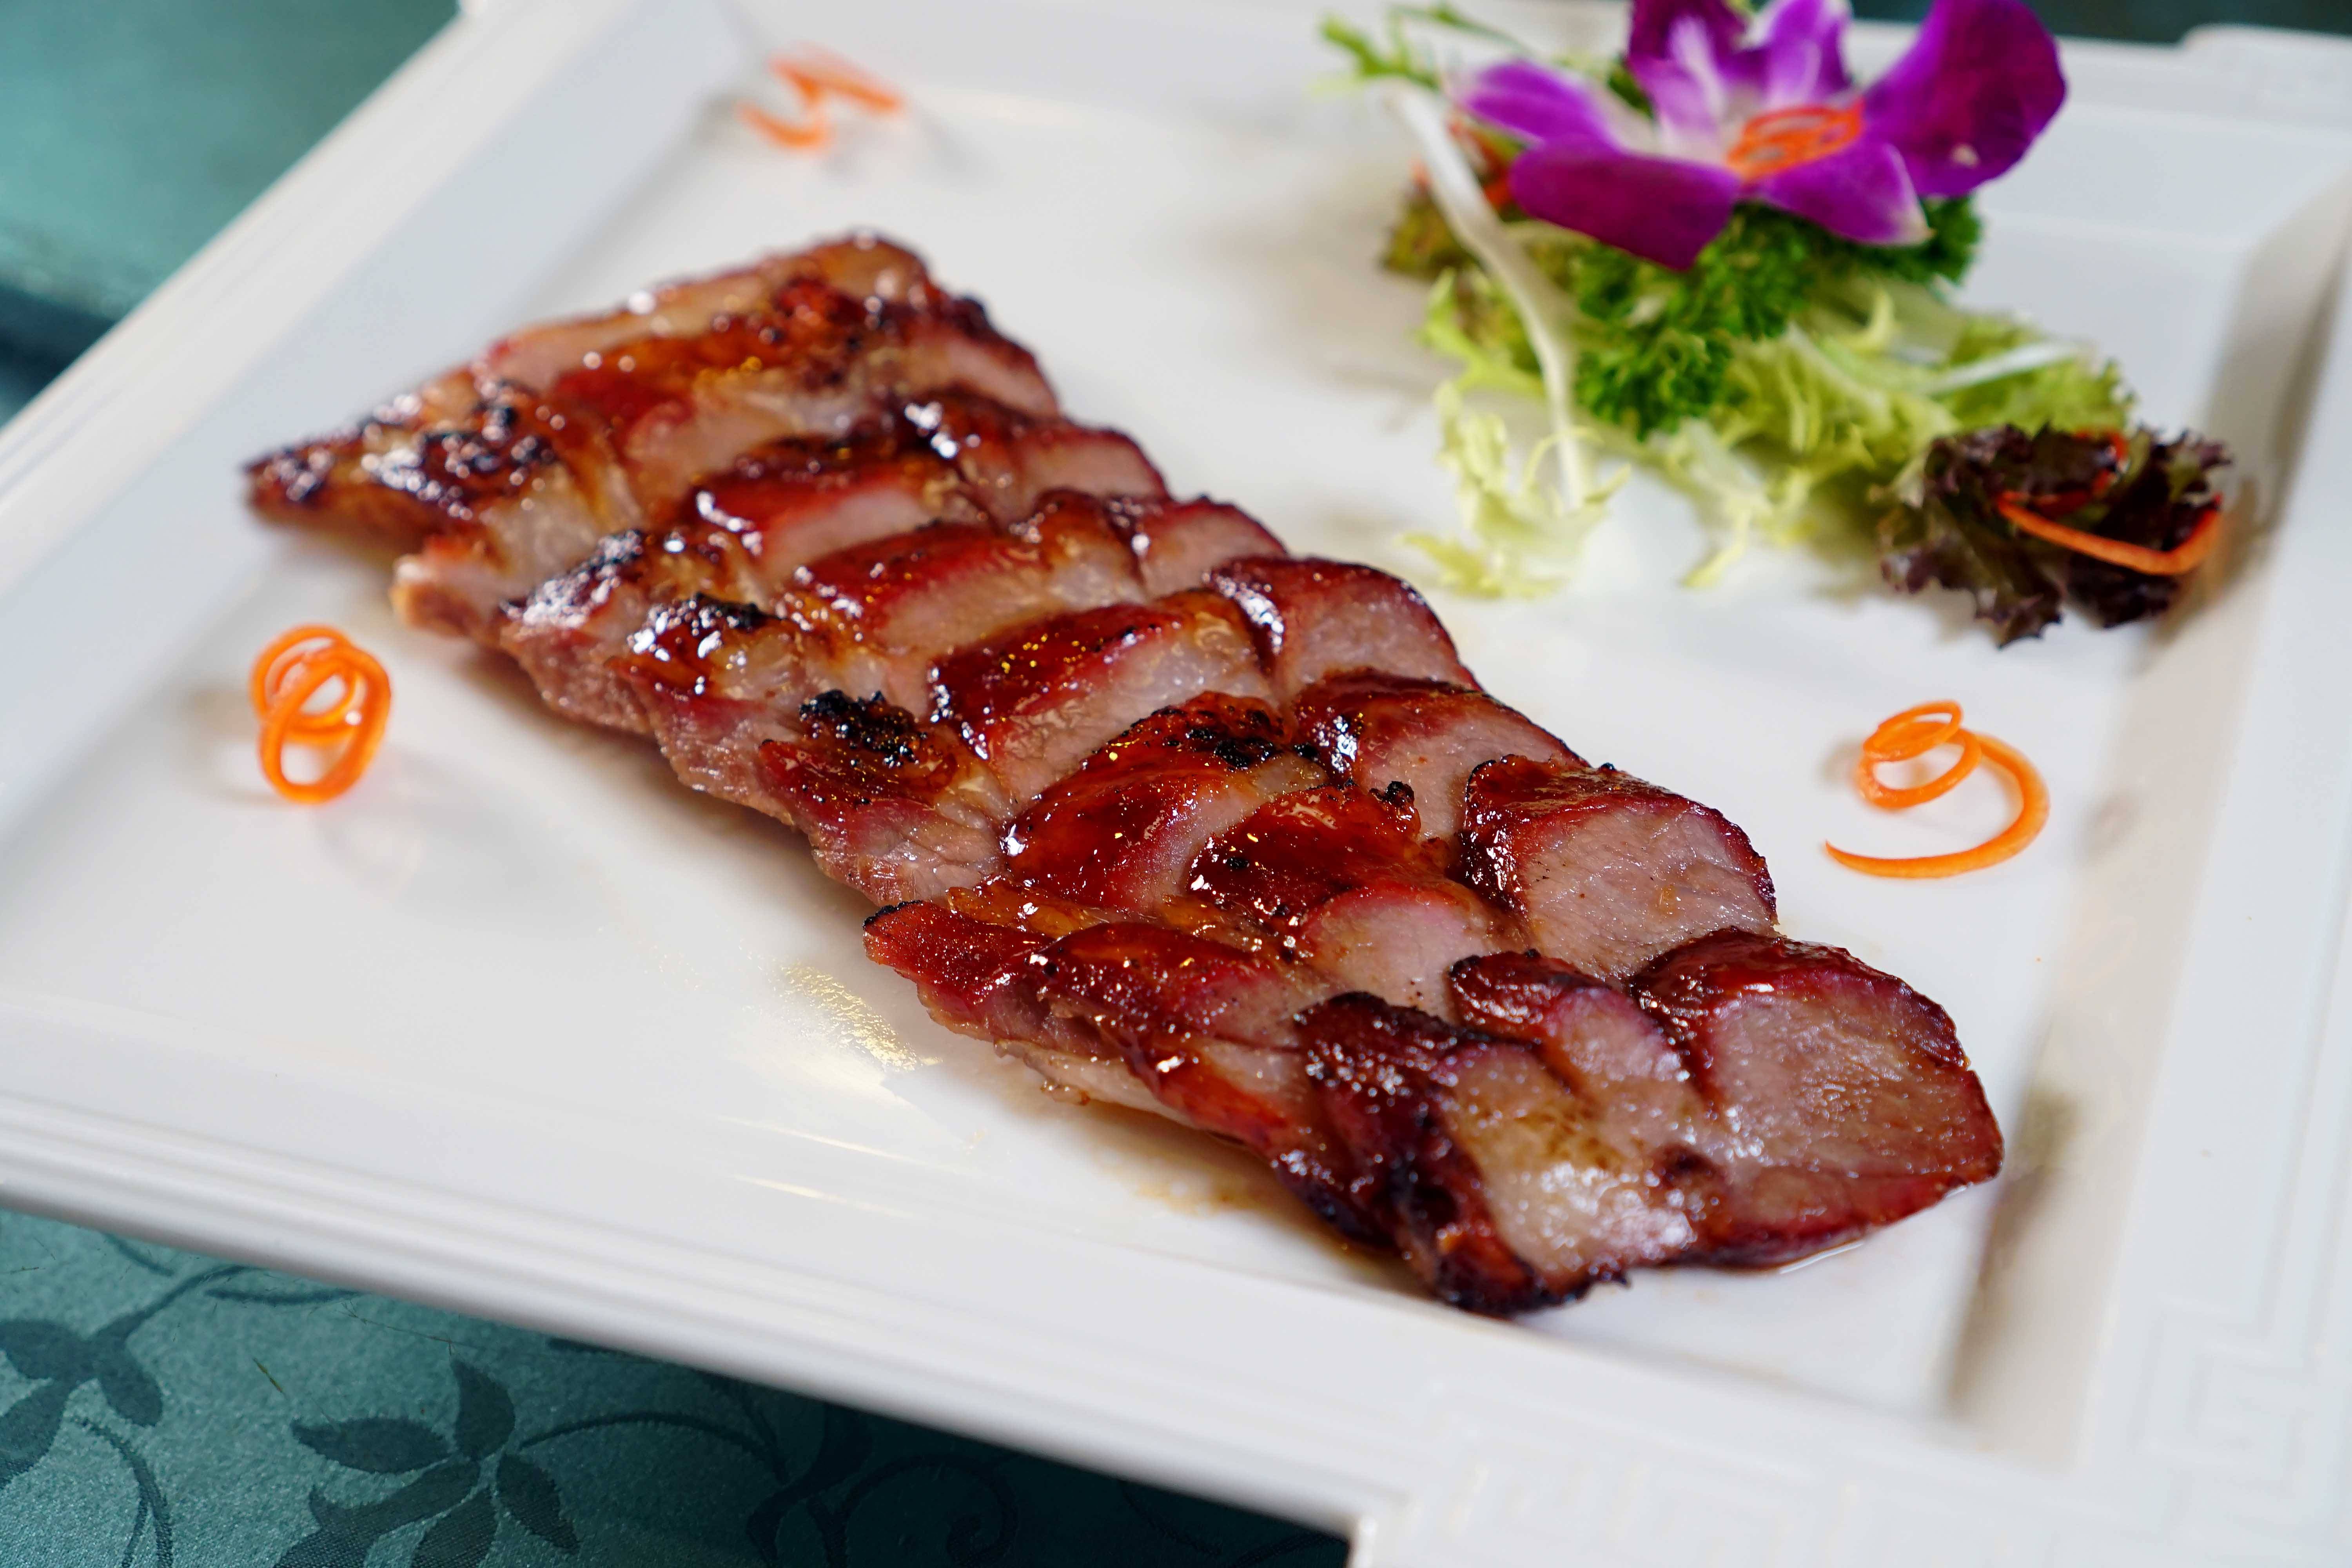 任食放題 叉住韓豬燒用腍滑富肉味的韓豬脢頭肉來炮製，外皮焦香，入口鬆化。